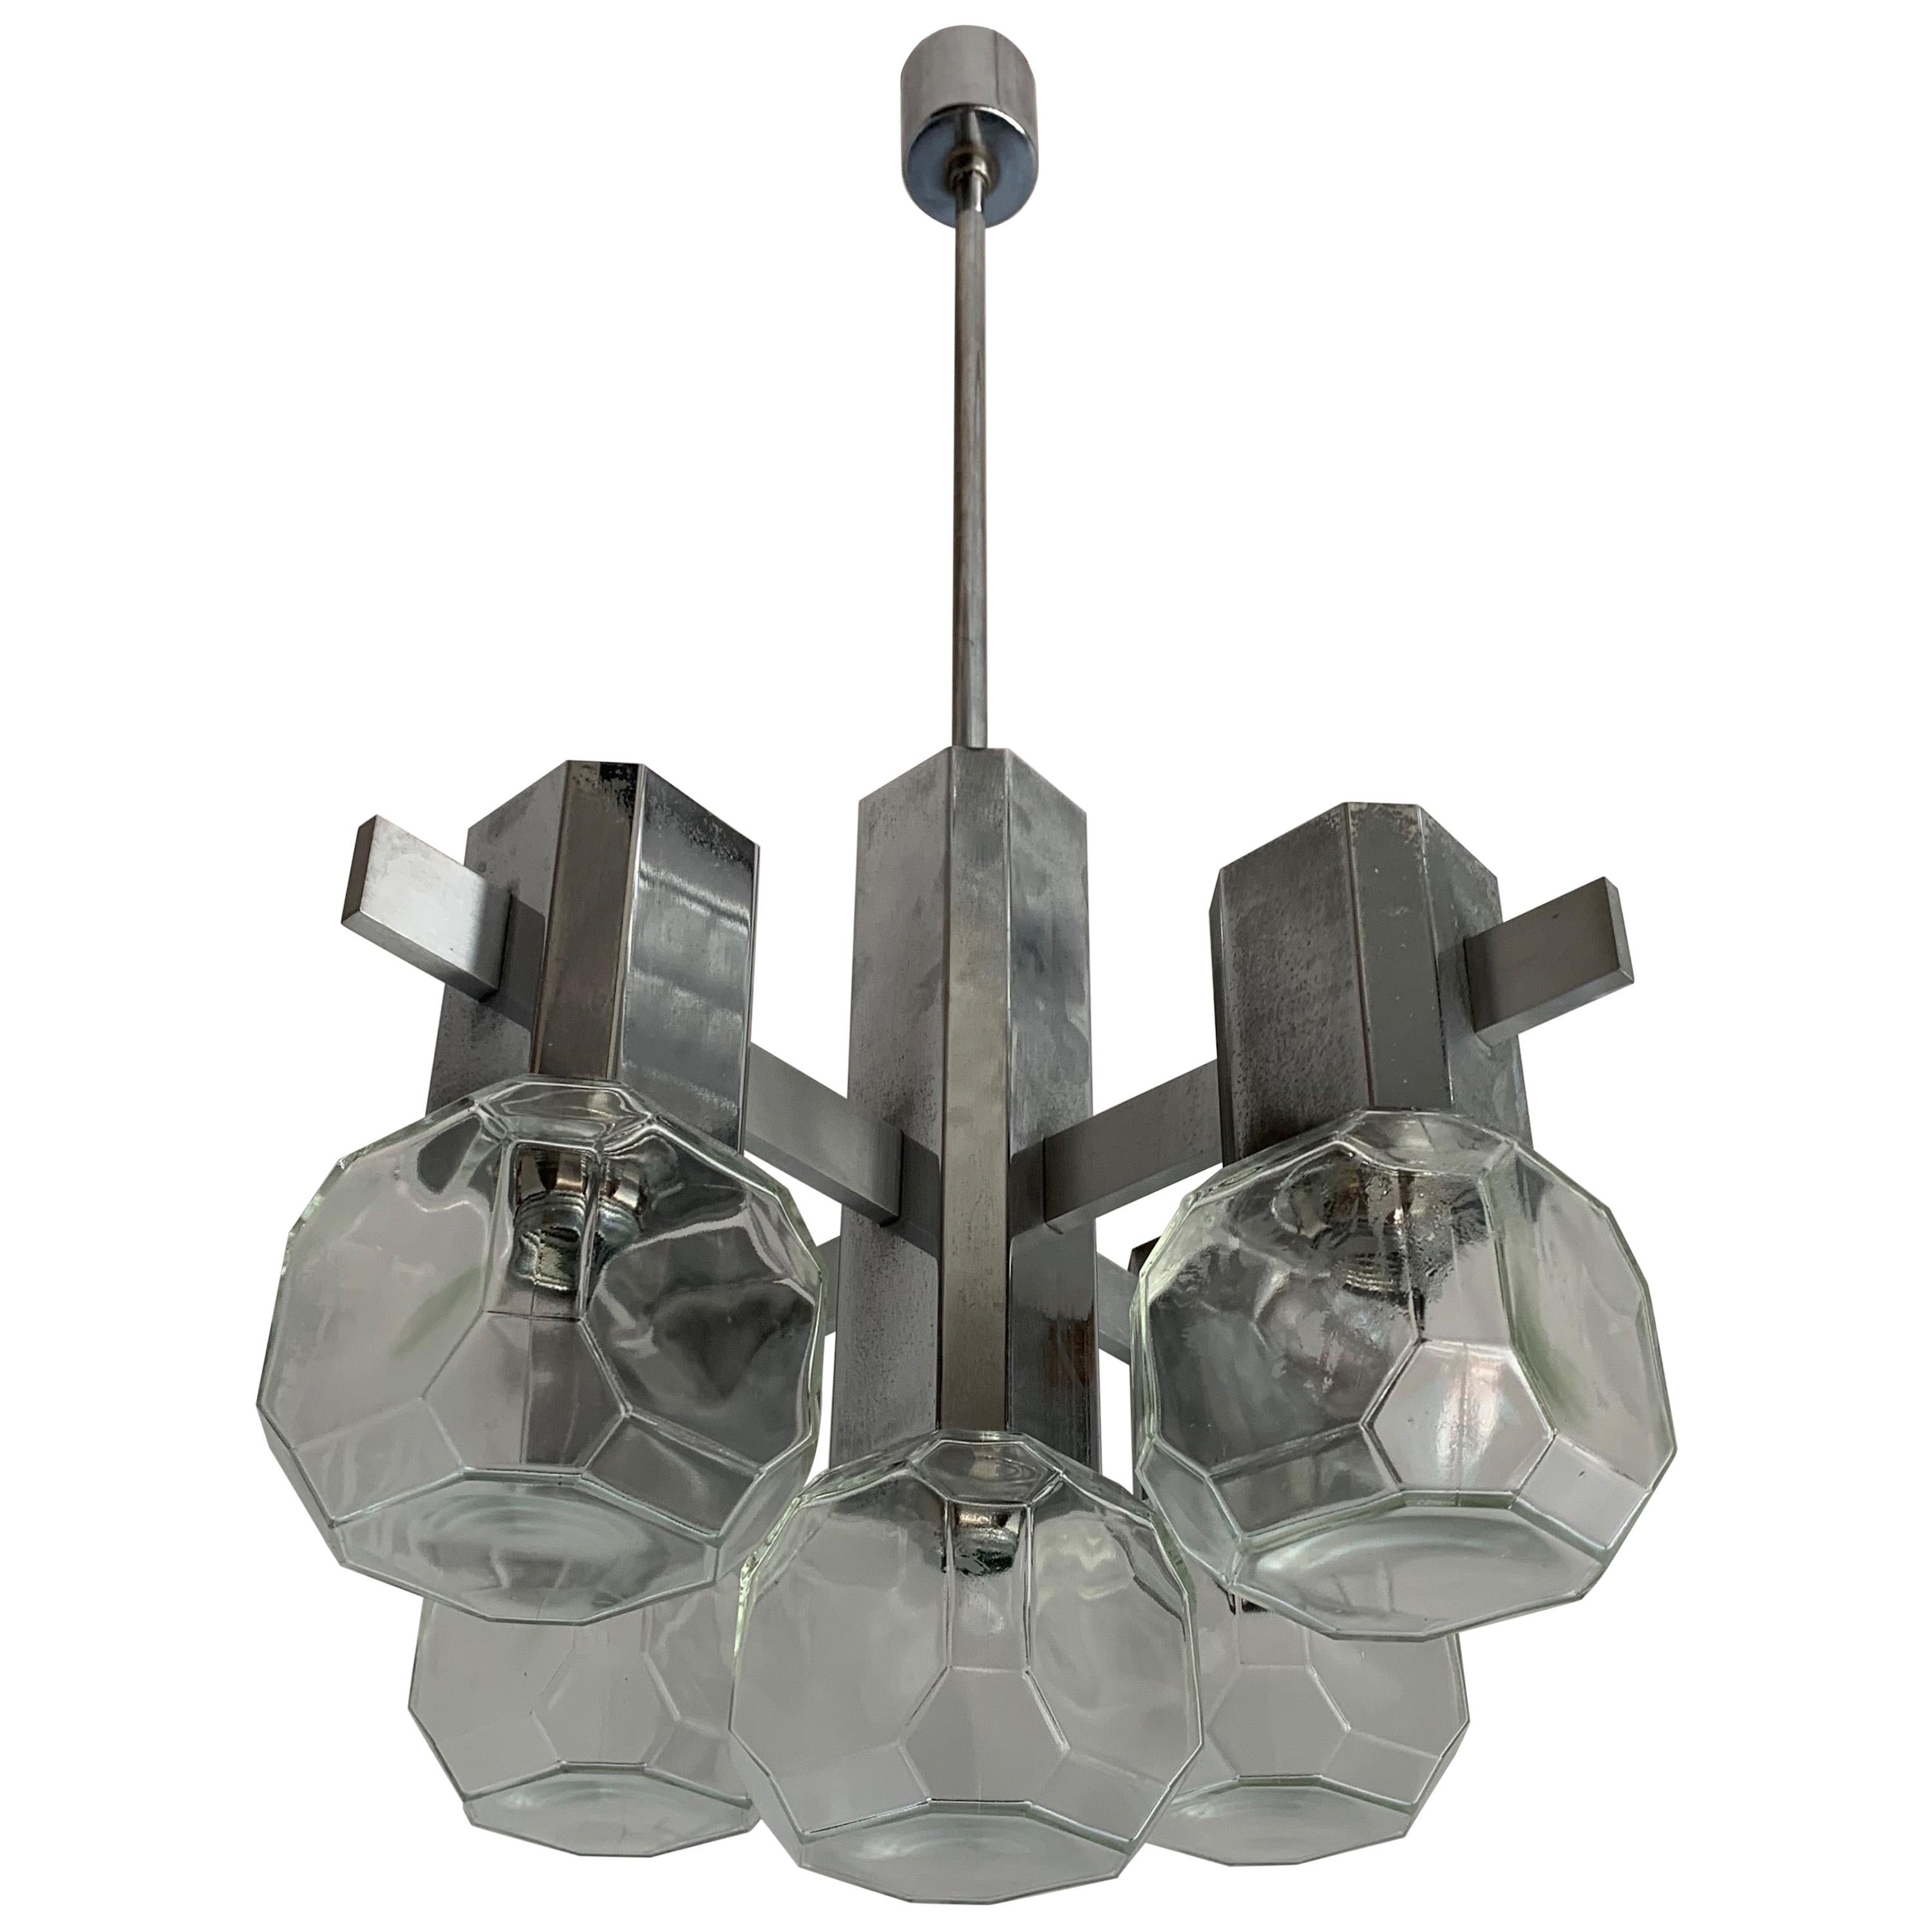 Lampe à suspension moderne du milieu du siècle dernier en métal chromé avec abat-jours en verre au design cubique